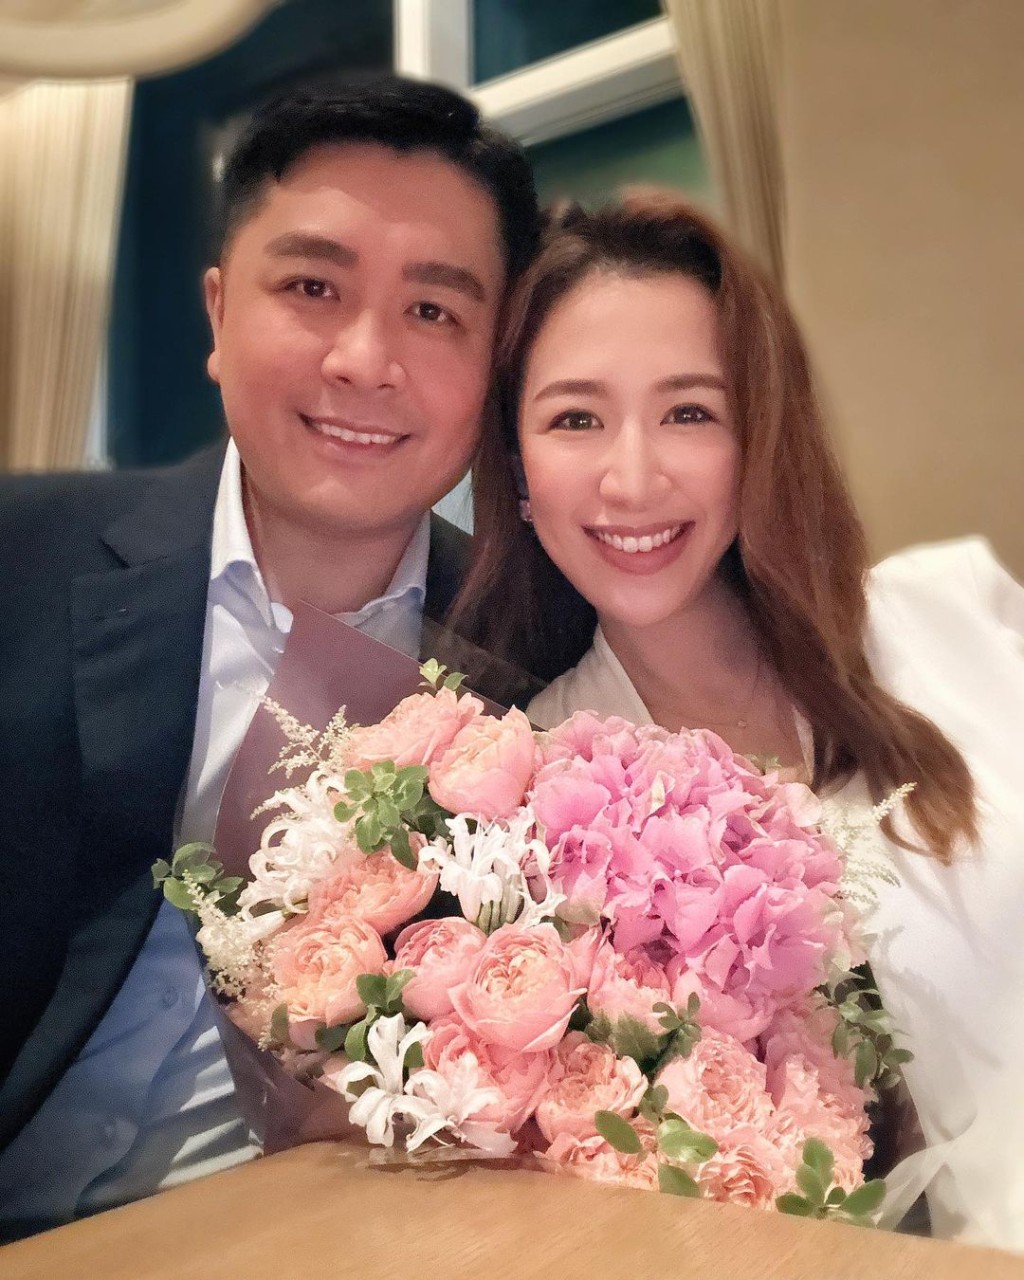 岑杏賢昨晚分享與丈夫慶祝結婚兩周年甜蜜照。